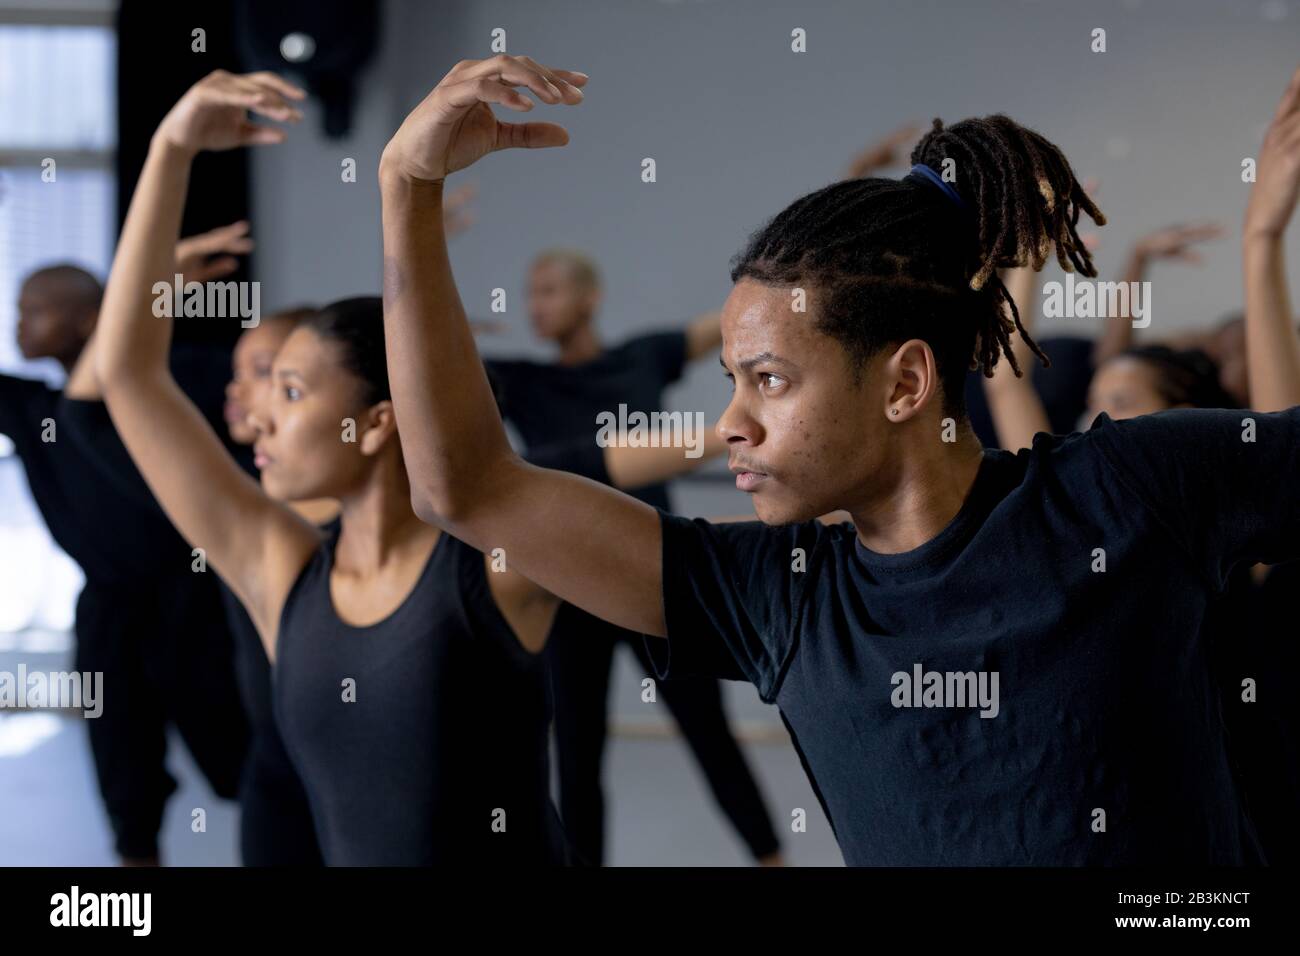 Danseuses modernes mixtes pratiquant la routine de danse dans un studio Banque D'Images